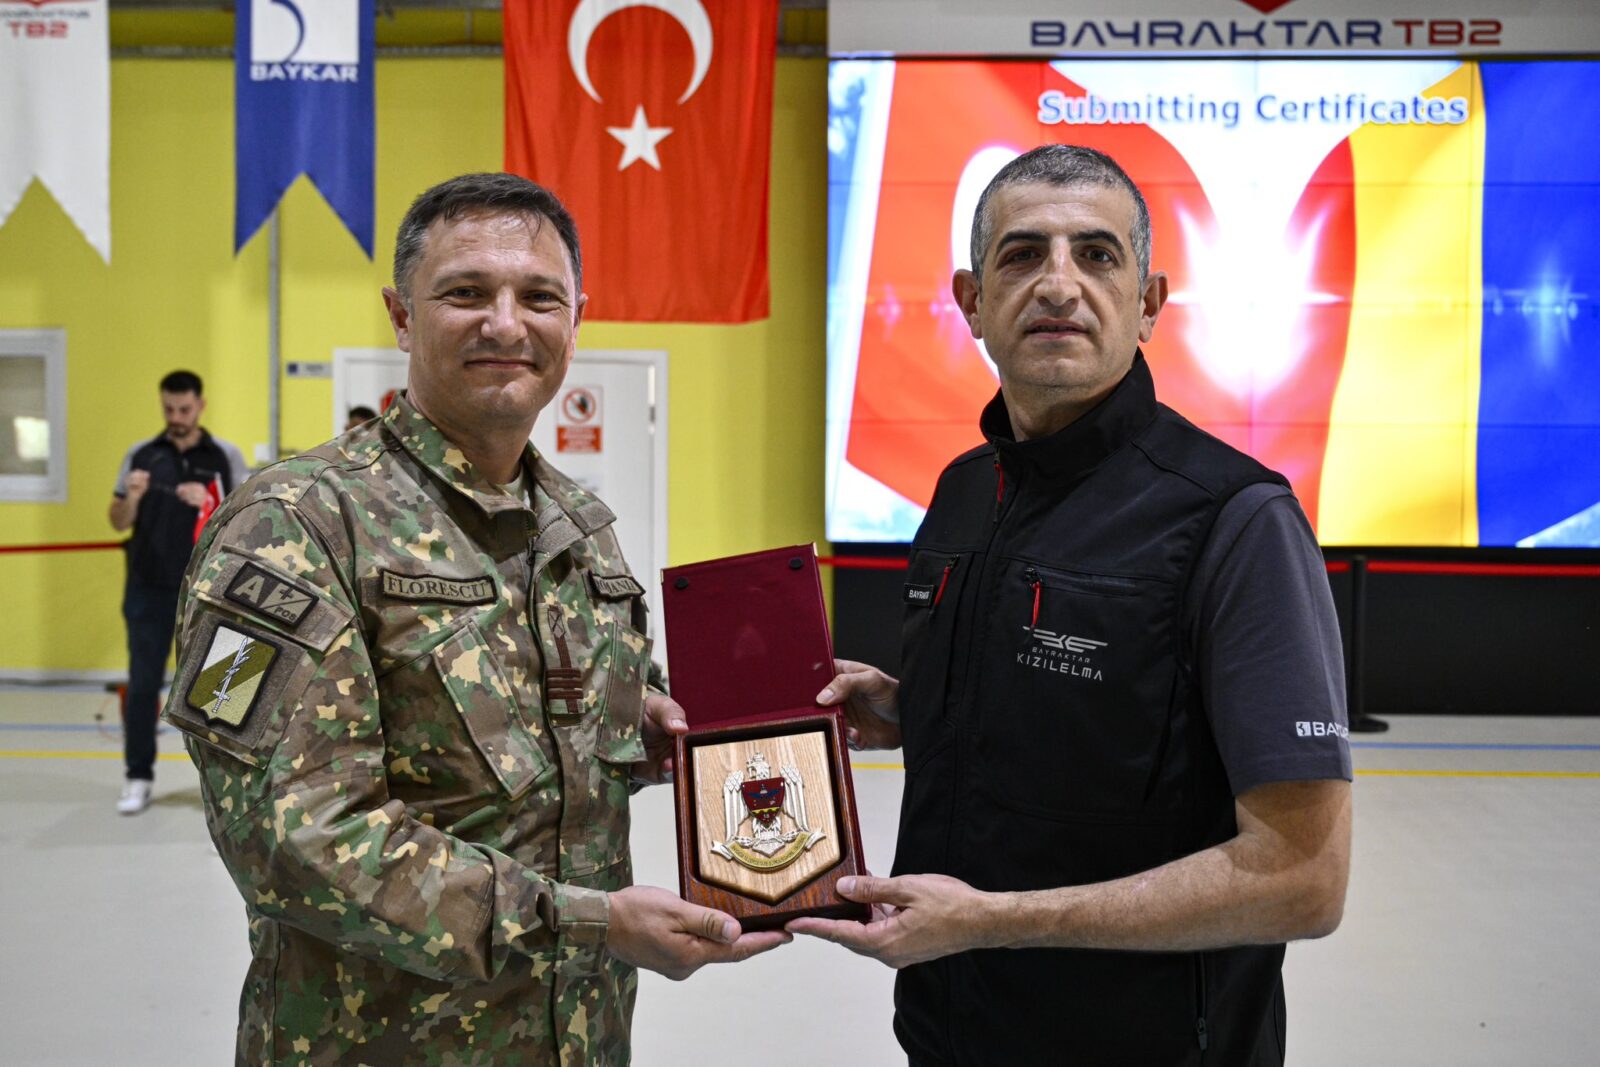 Trupele române au absolvit operațiunile UAV, întărind legăturile de securitate dintre Turcia și România